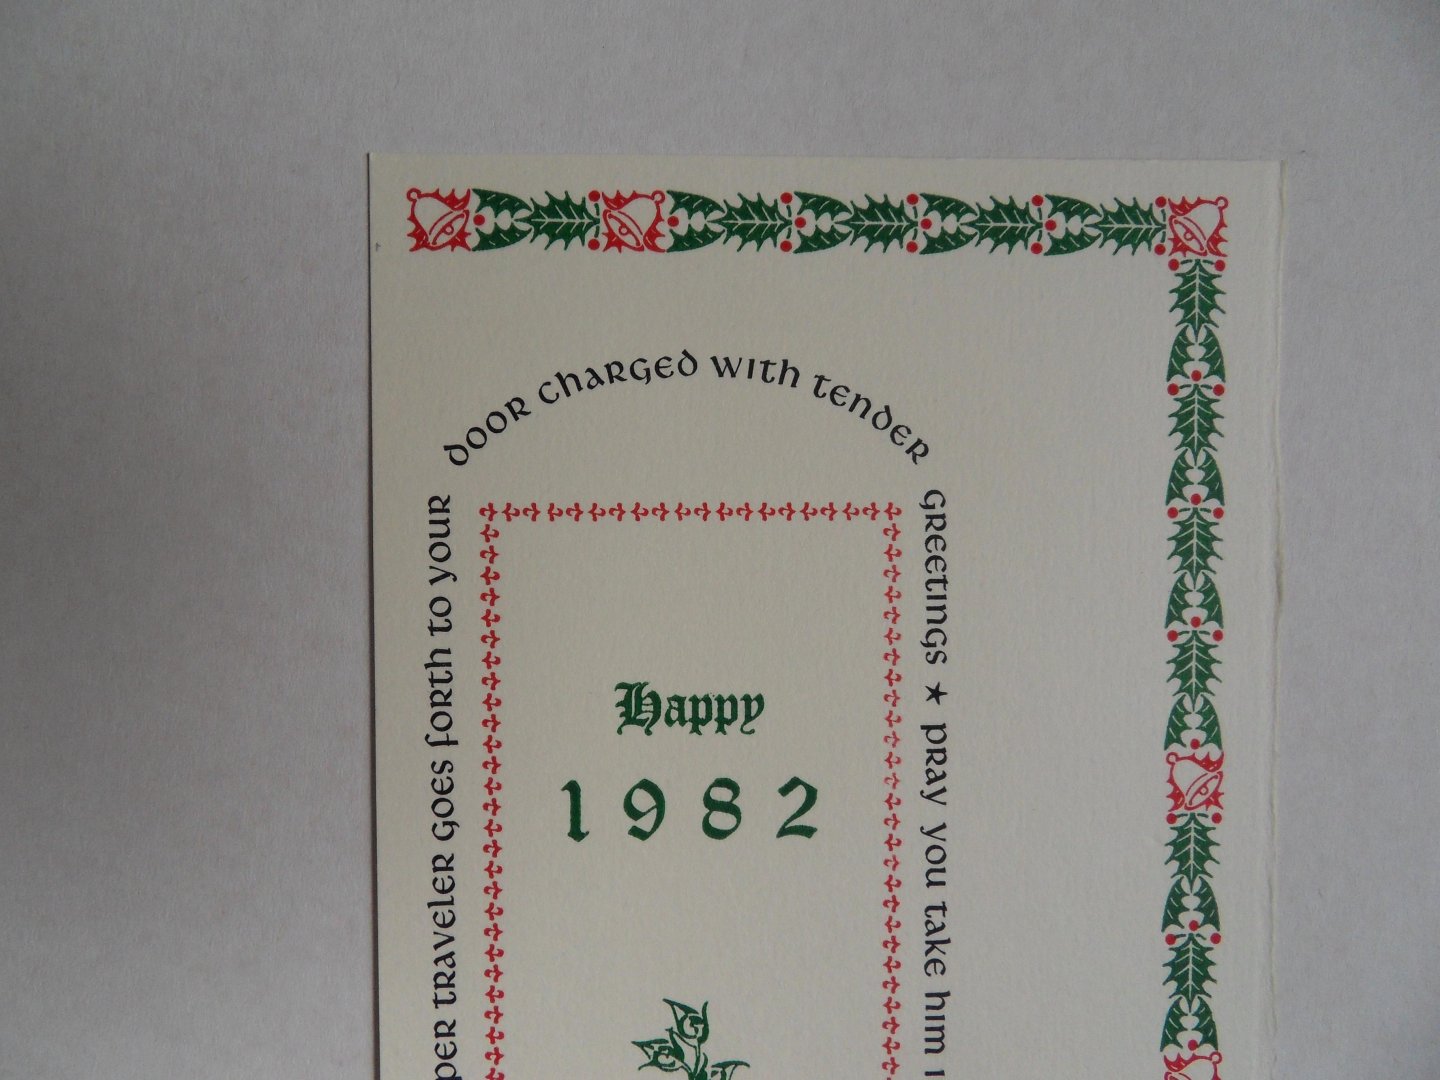 Otterloo, Henk van. - Kerstgroet: Merry Christmas - Happy 1982 . [ Beperkte oplage van ca. 50 exemplaren ].